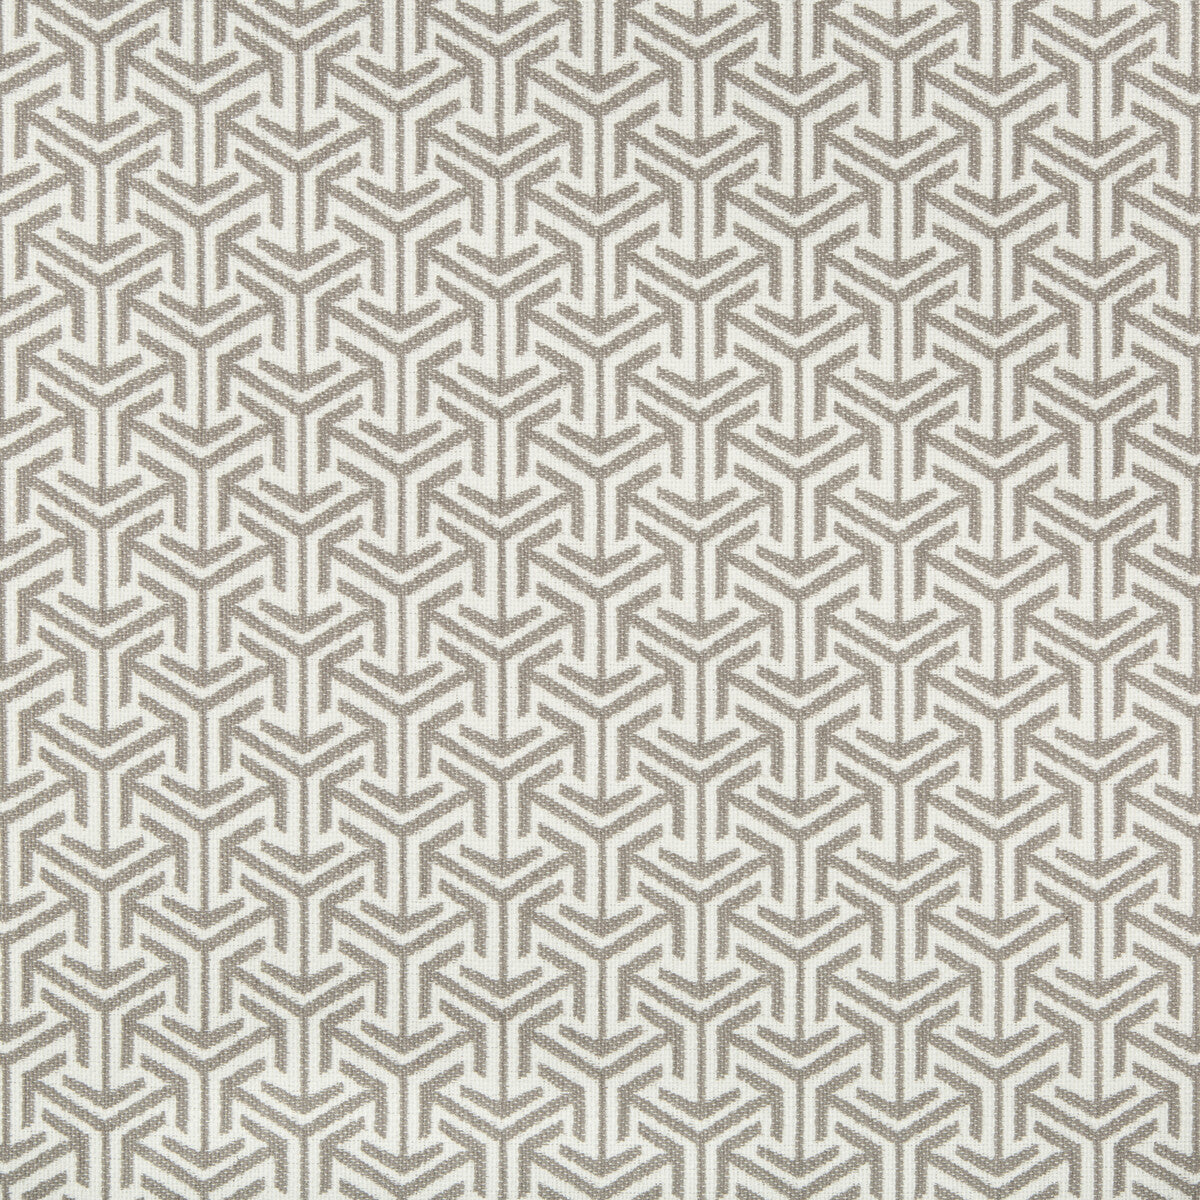 Kravet Design fabric in 35715-11 color - pattern 35715.11.0 - by Kravet Design